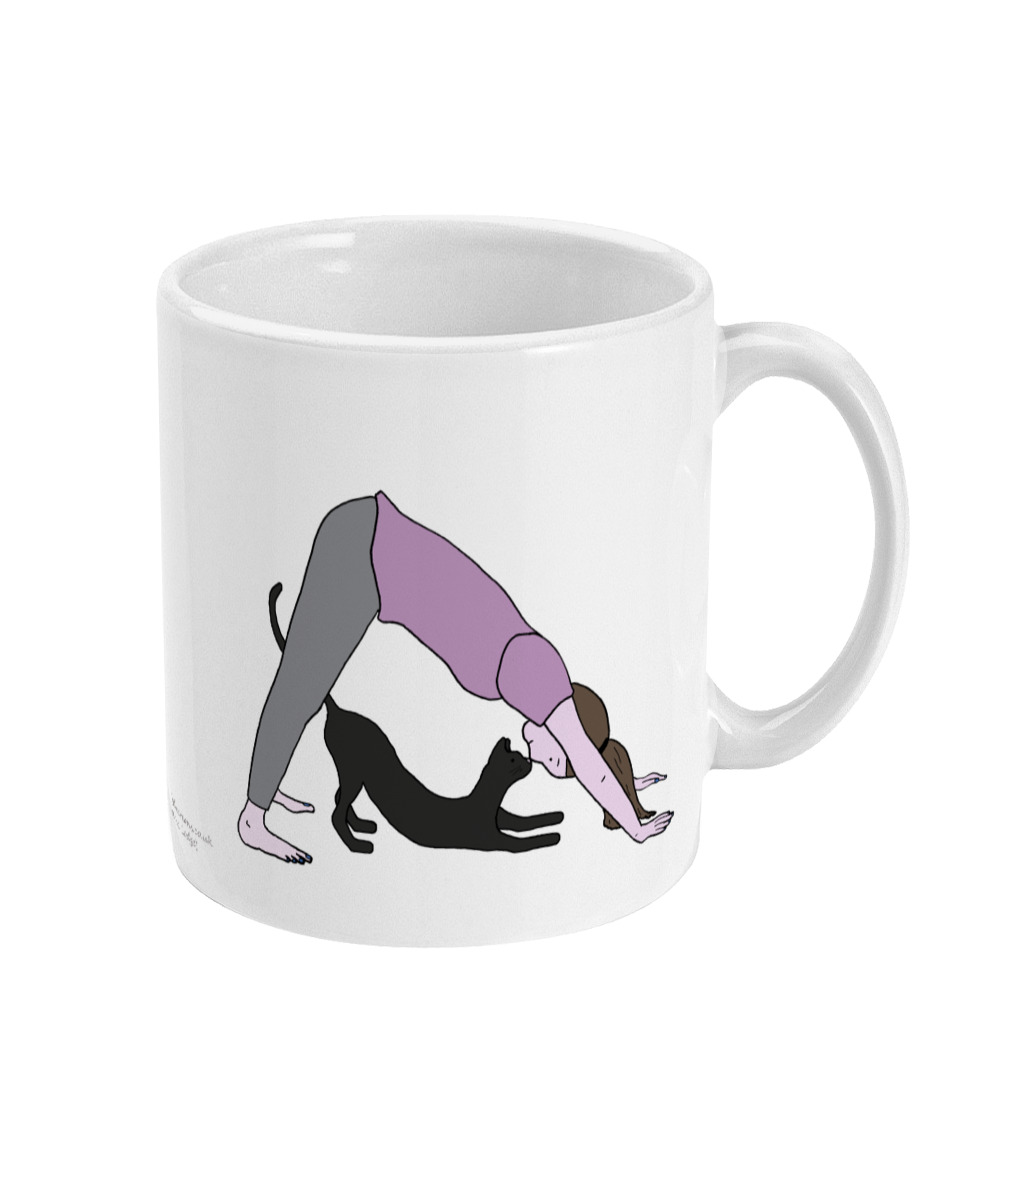 Down Dog and Cat Yoga Mug